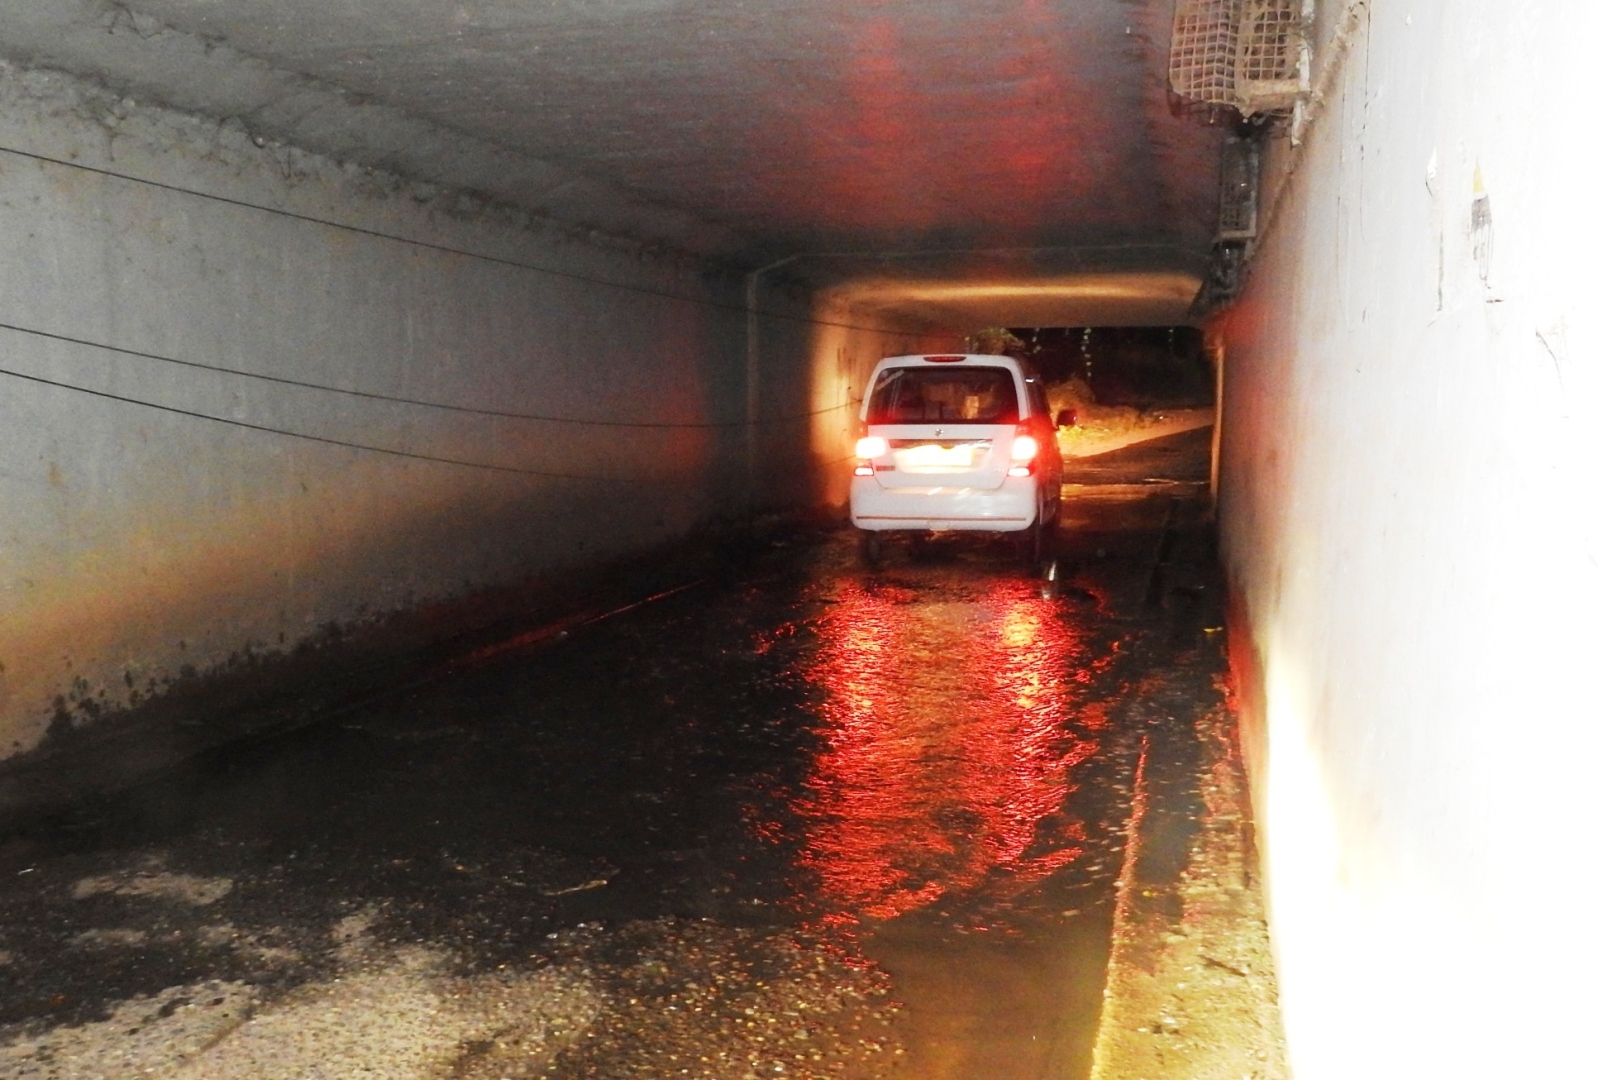 Authorities left in the dark over waterlogging at Comba subway